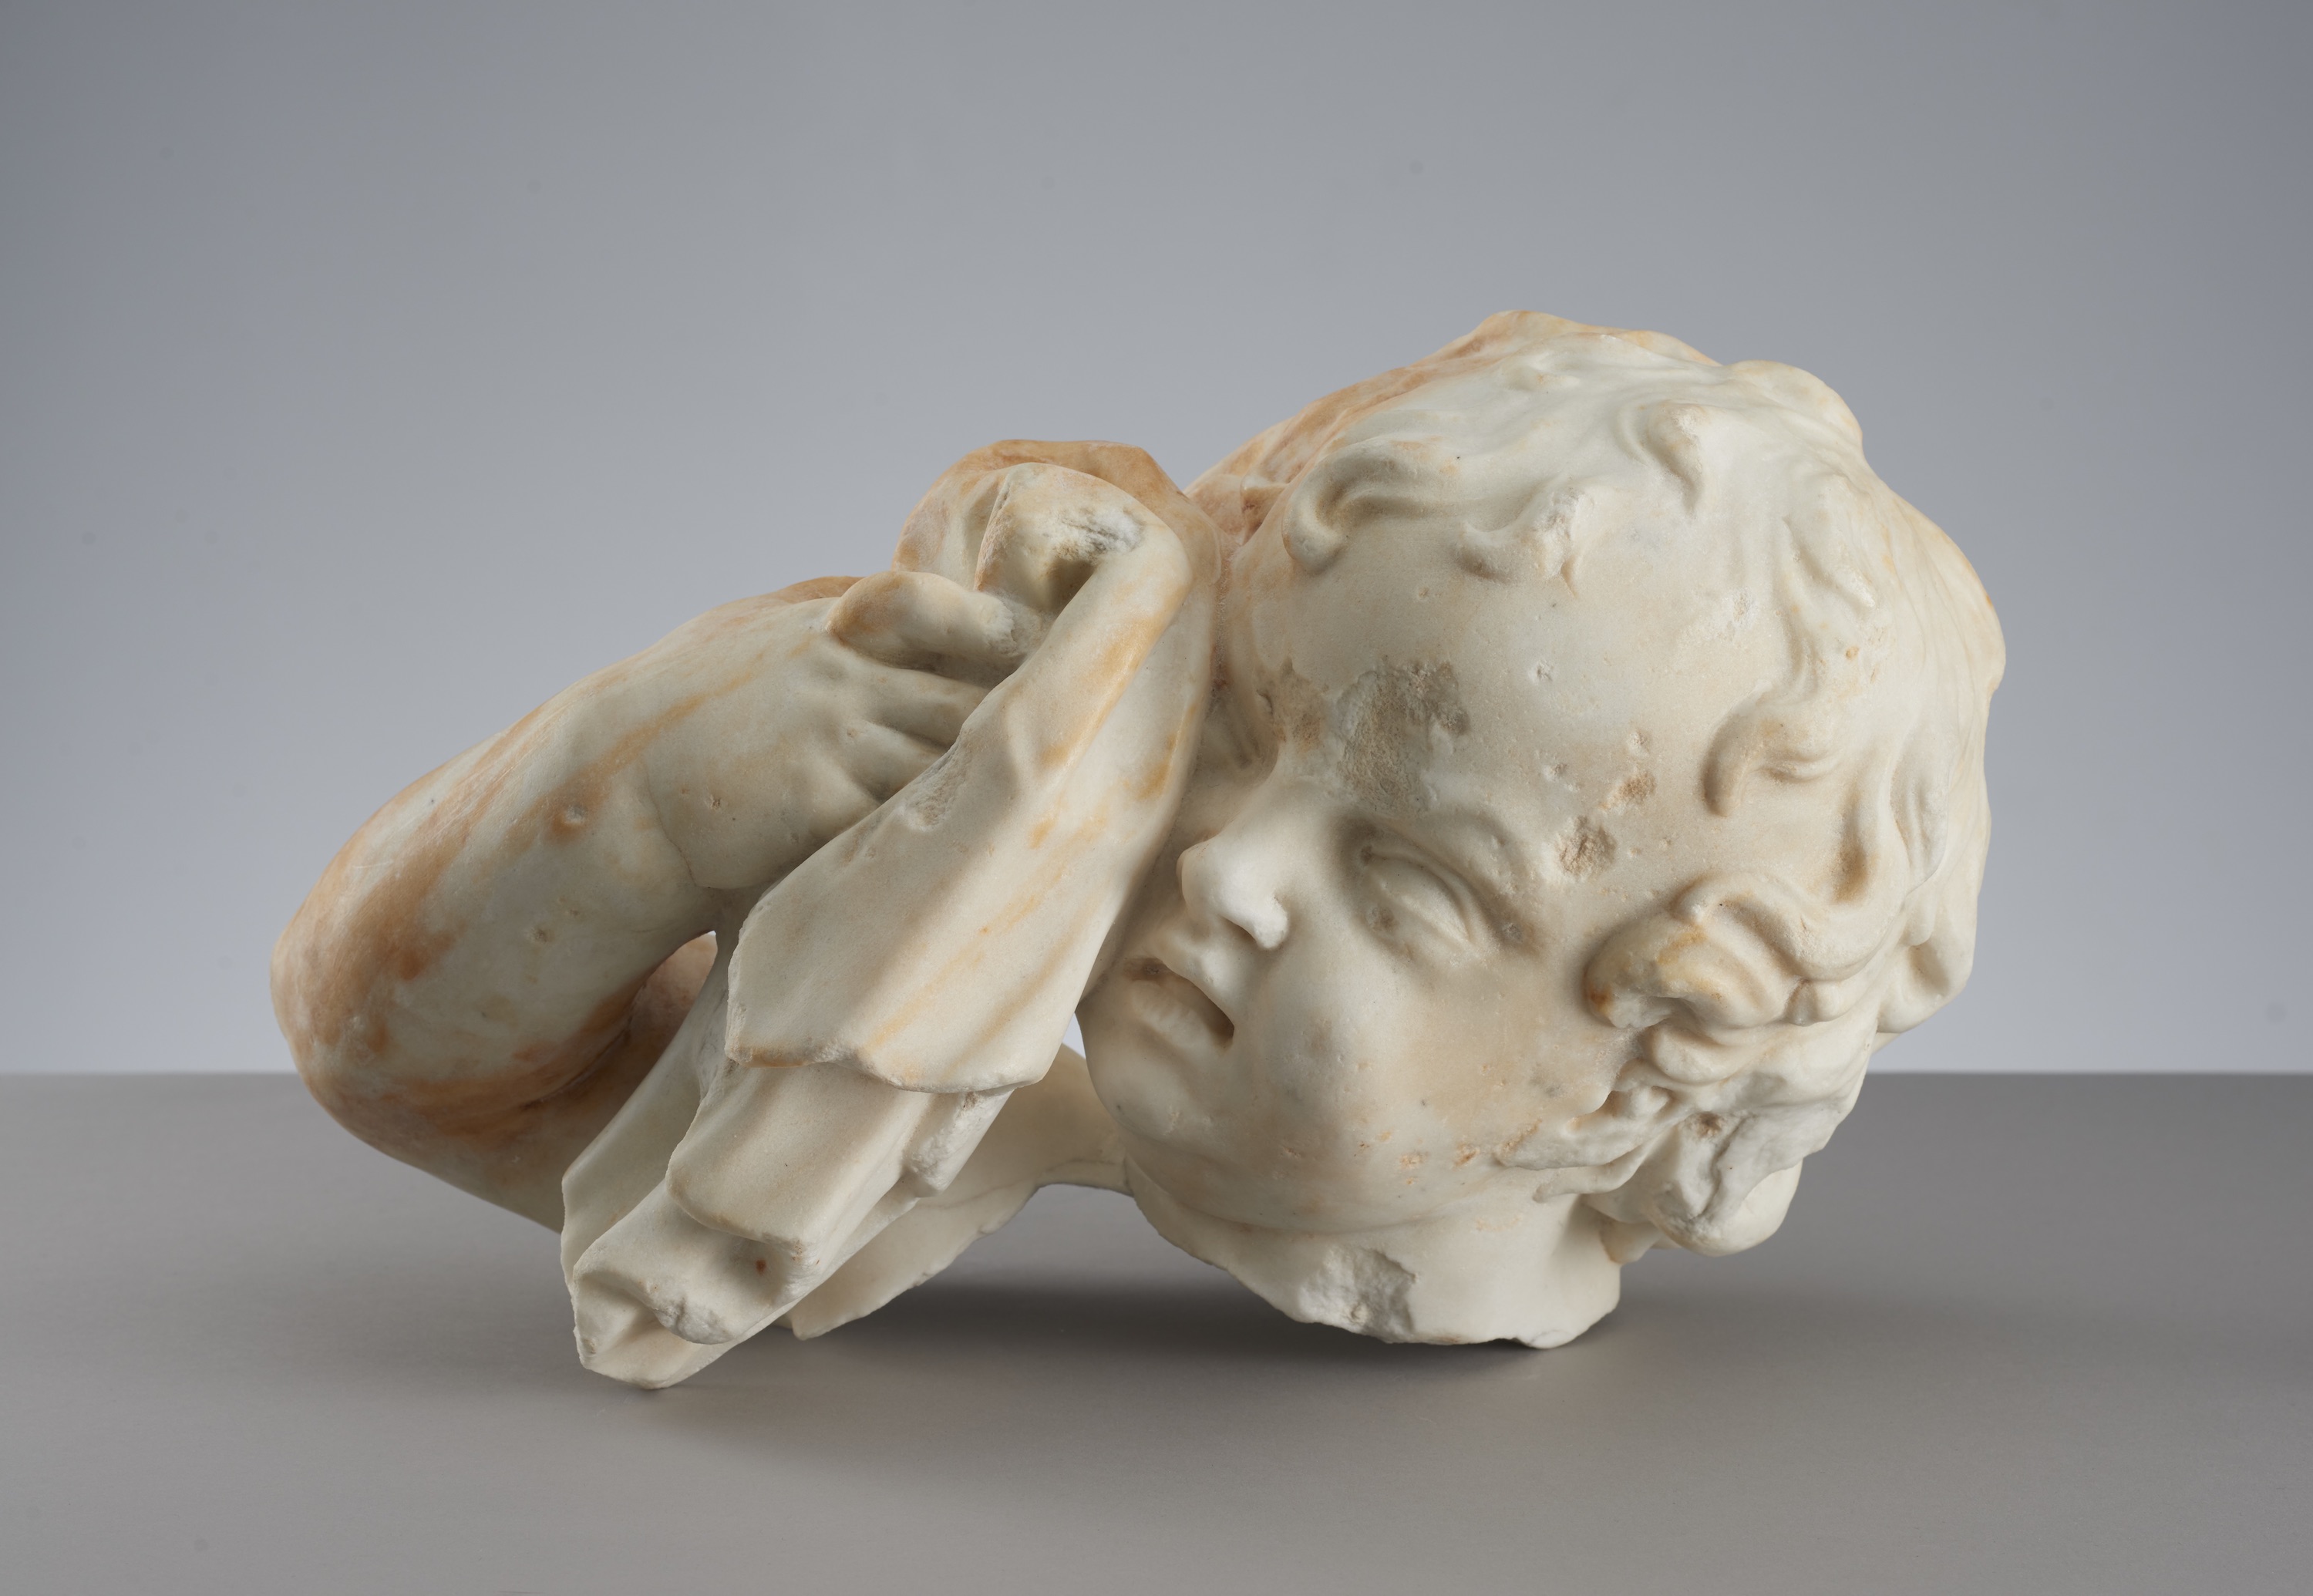 La cabeza de un putto llorando by Artista anónimo  - 1760 Museo de Varsovia